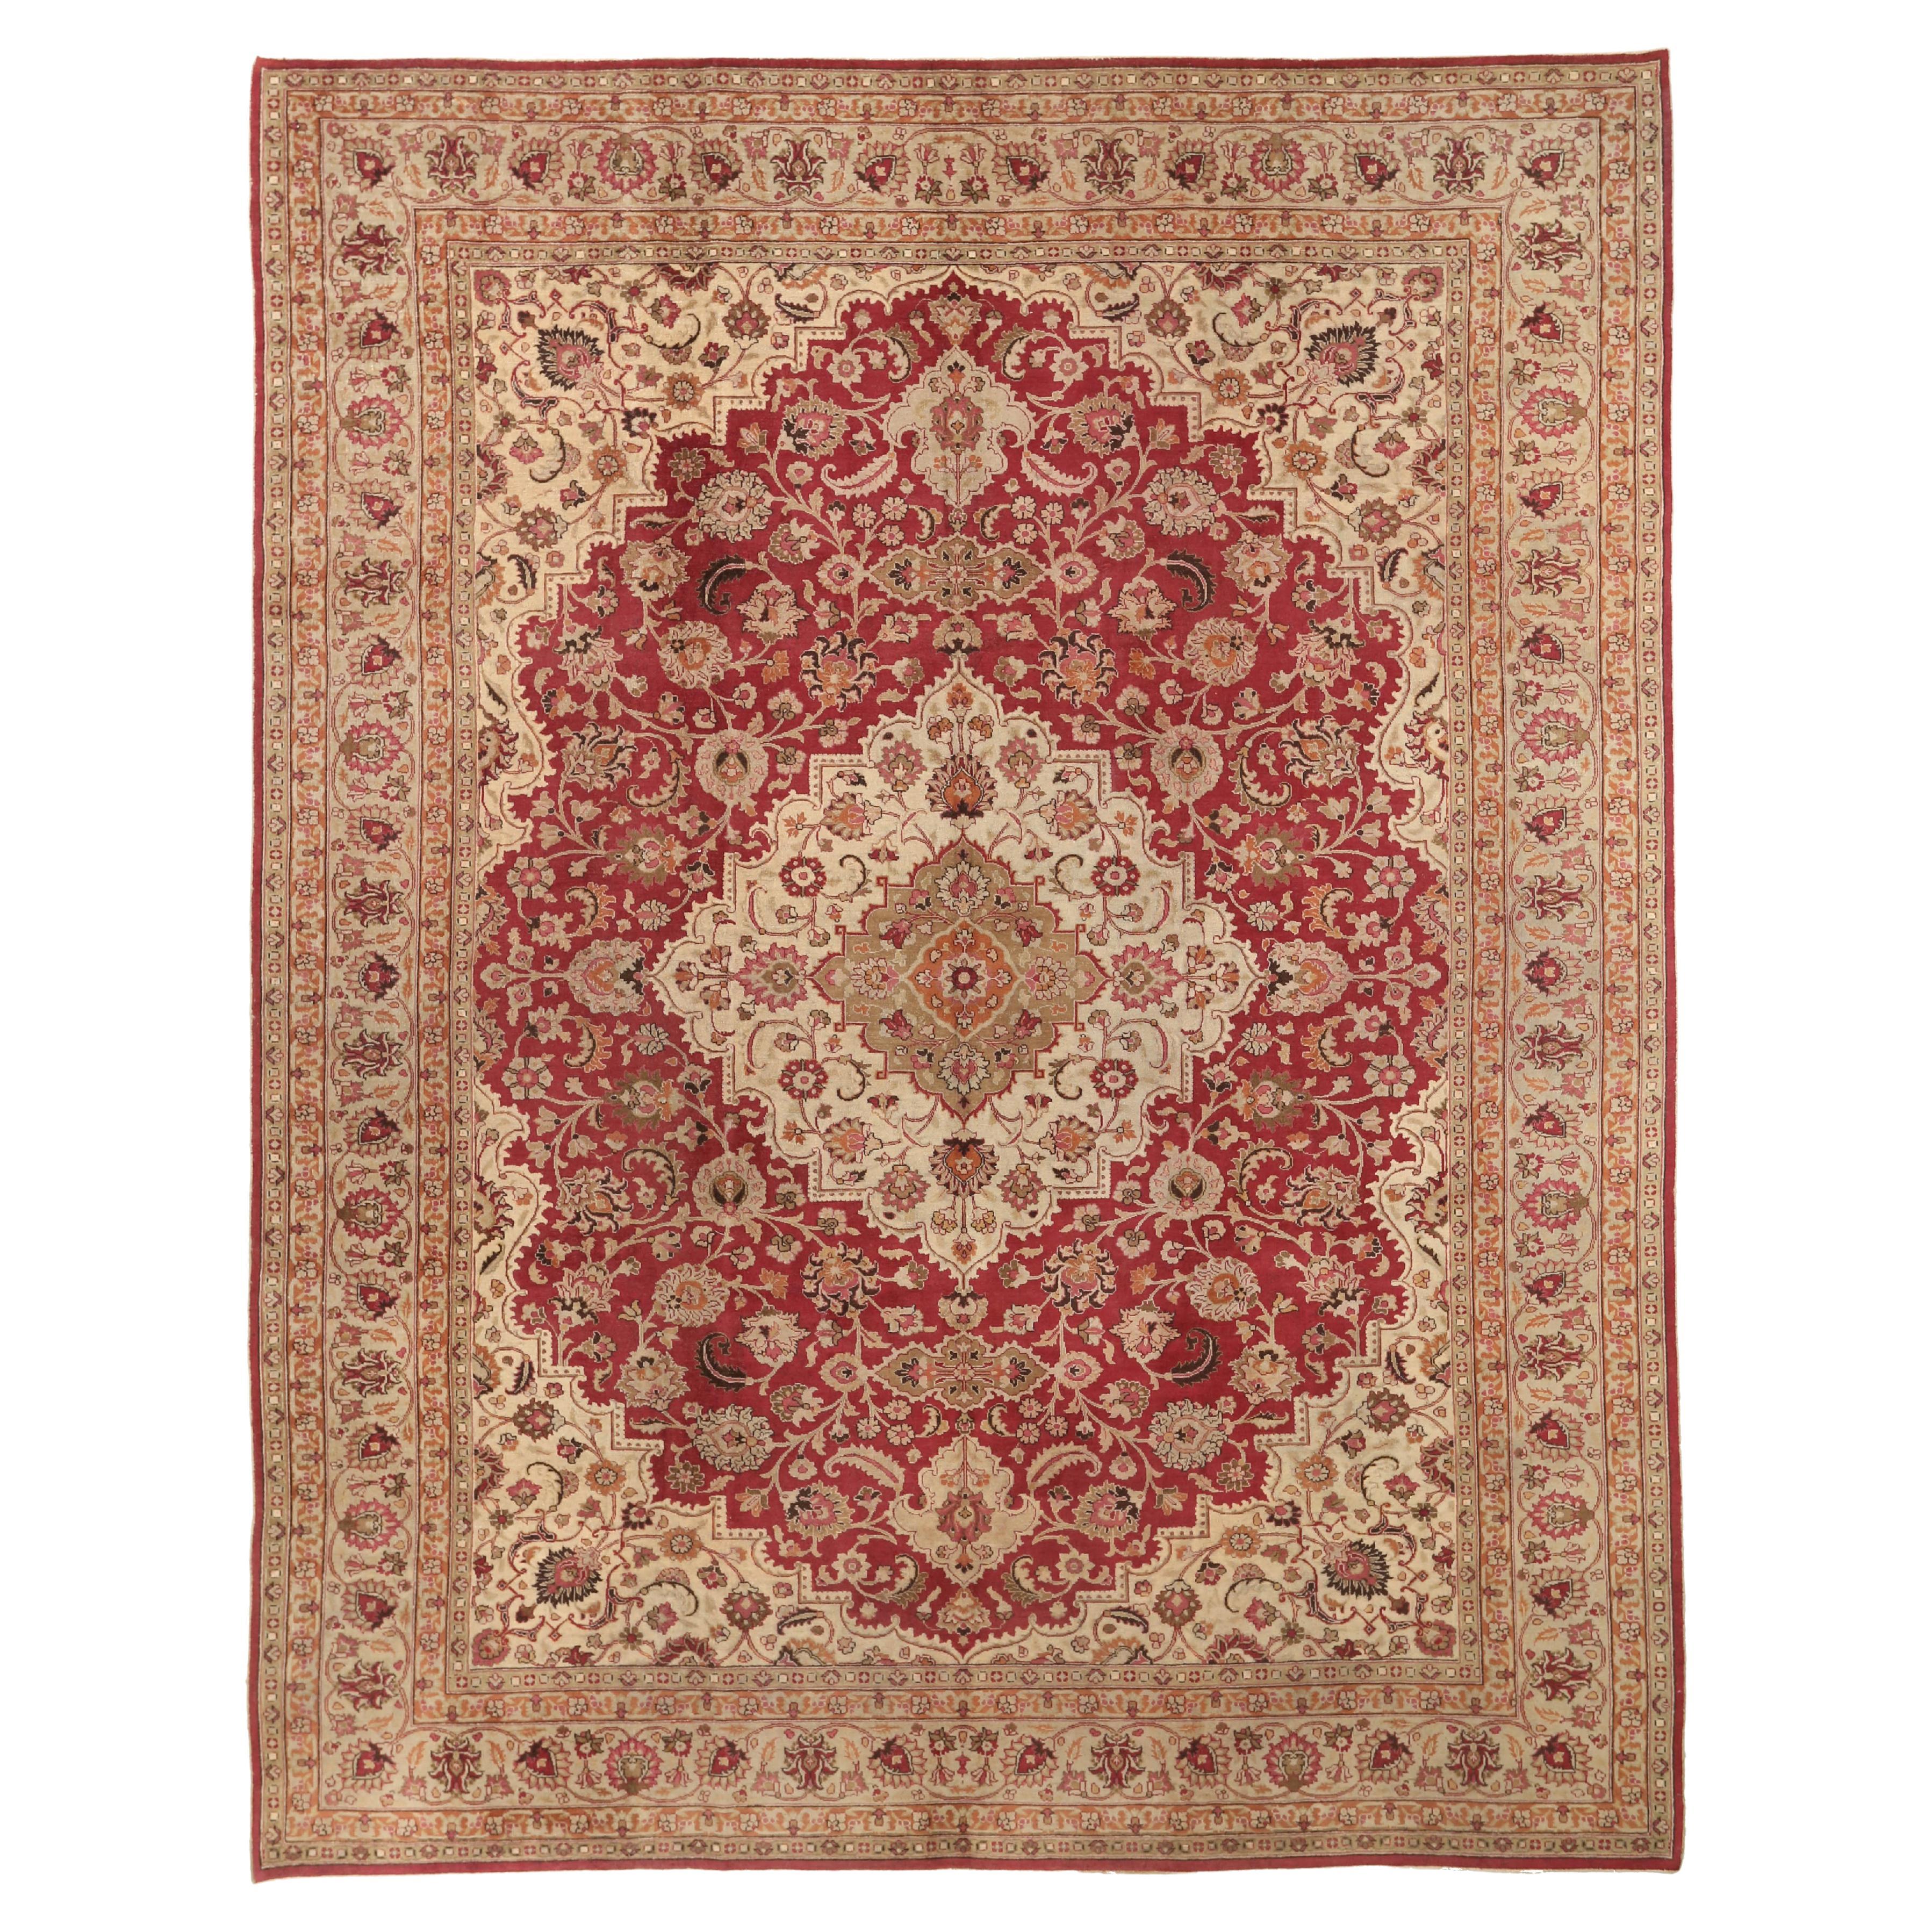 Antiker handgefertigter persischer Teppich im Mashad-Design